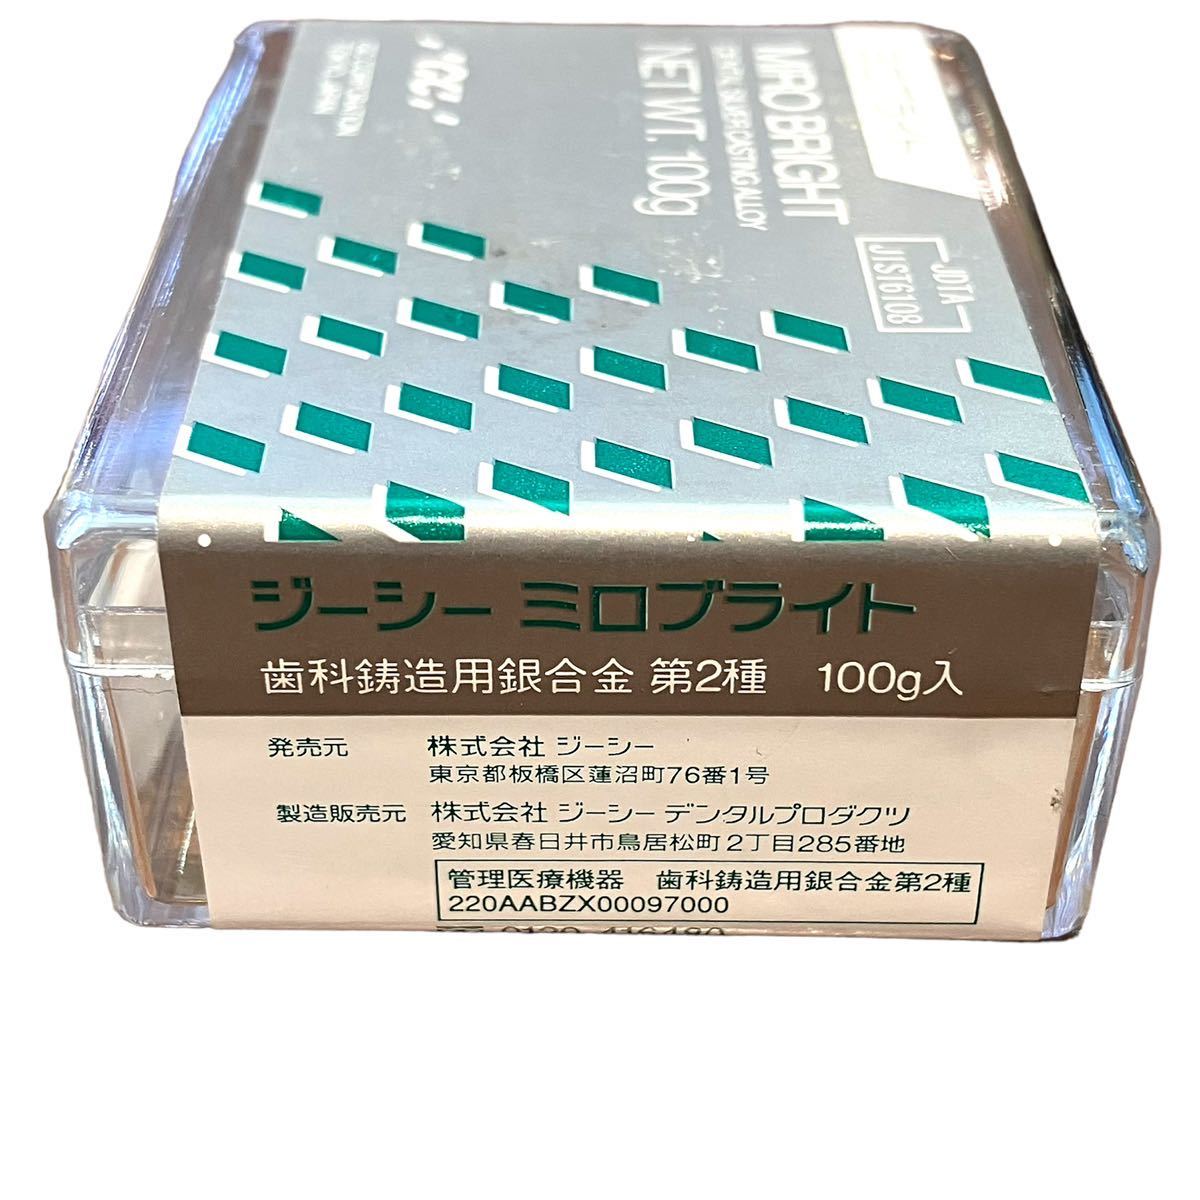 シルビジウムH(歯科鋳造用銀合金第2種) [日本歯研工業] | monsterdog